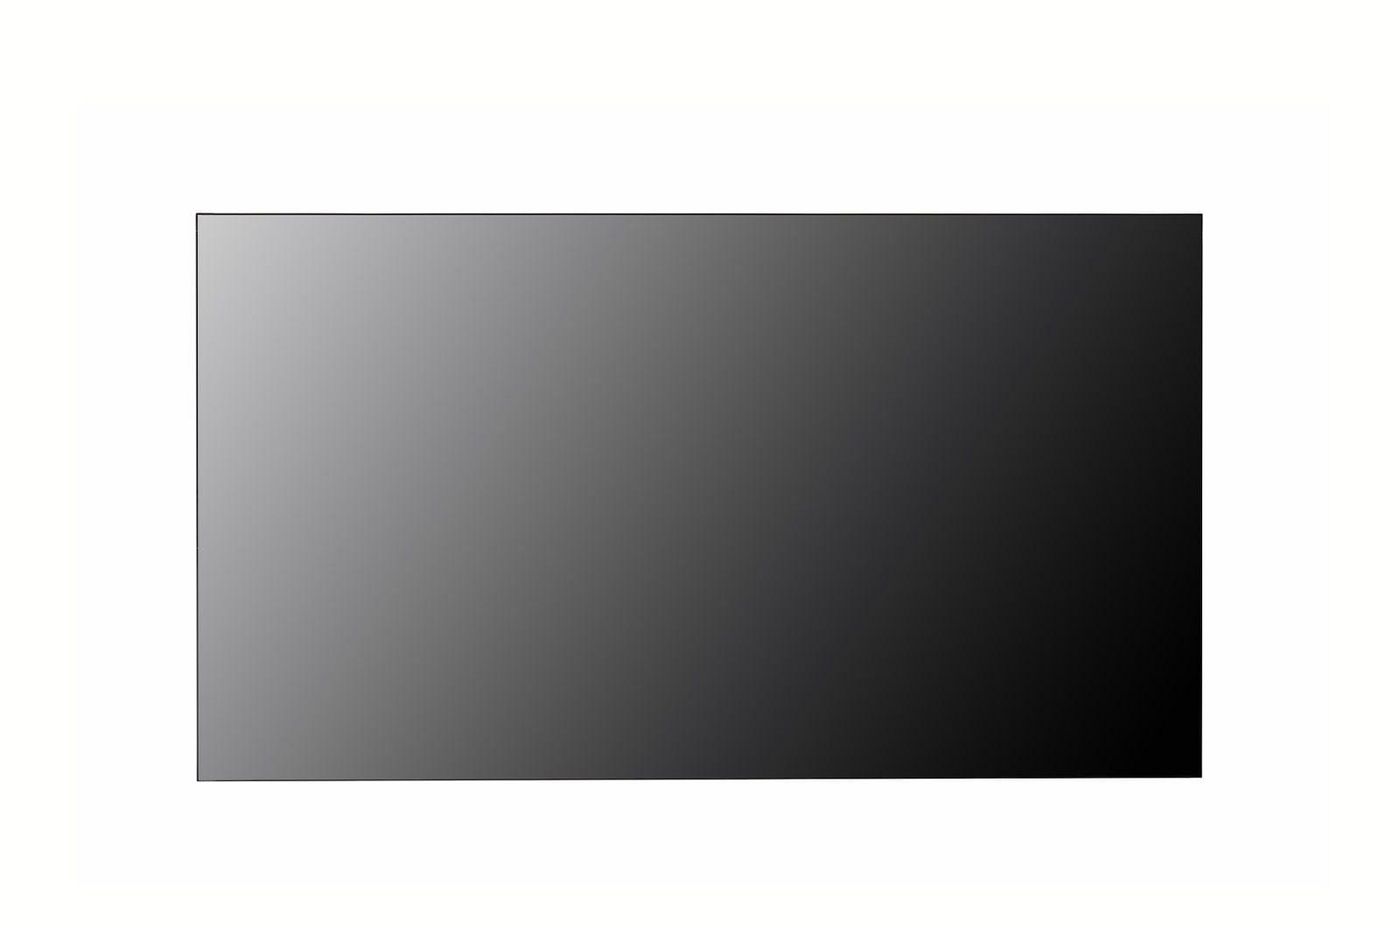 LG 55VH7J-H W128276528 Signage Display Panorama 